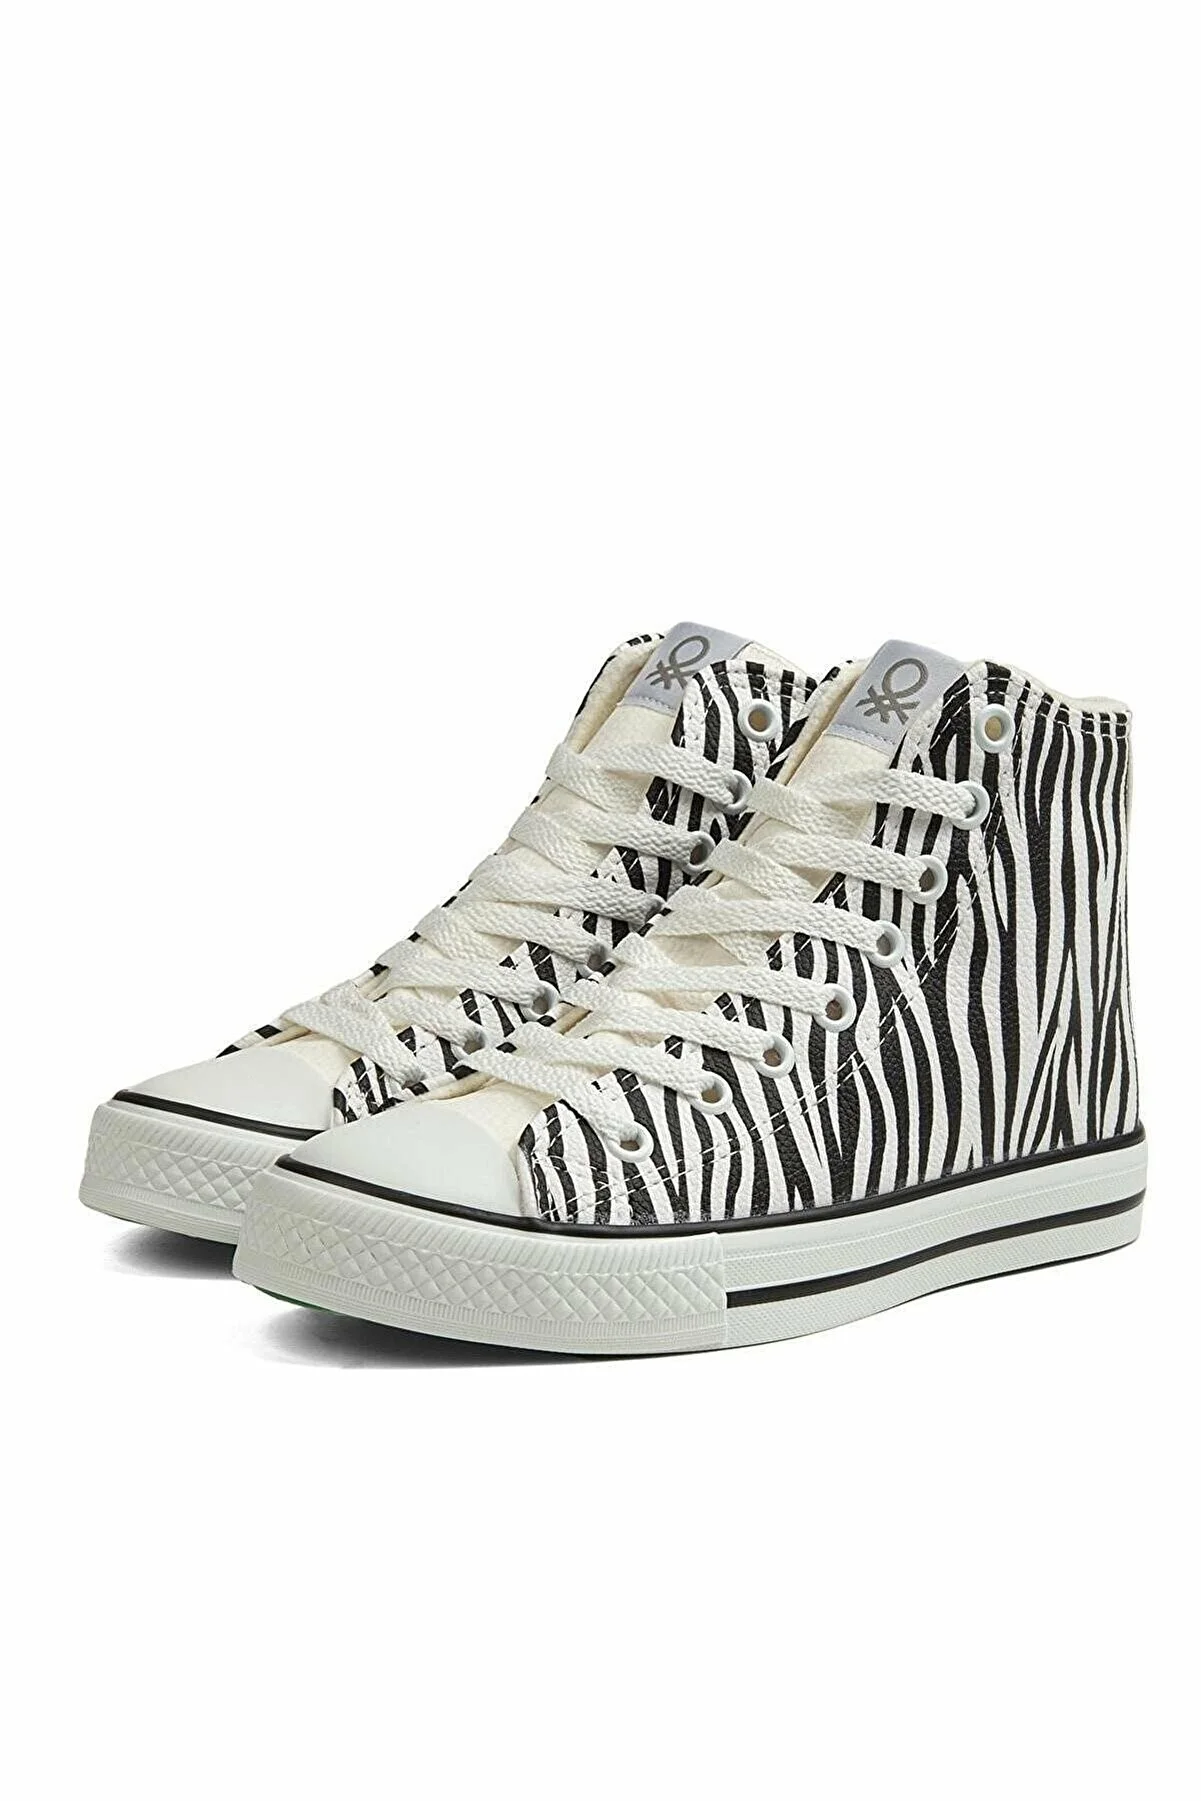 Kadın Spor Ayakkabı BN-30736-Zebra - Thumbnail